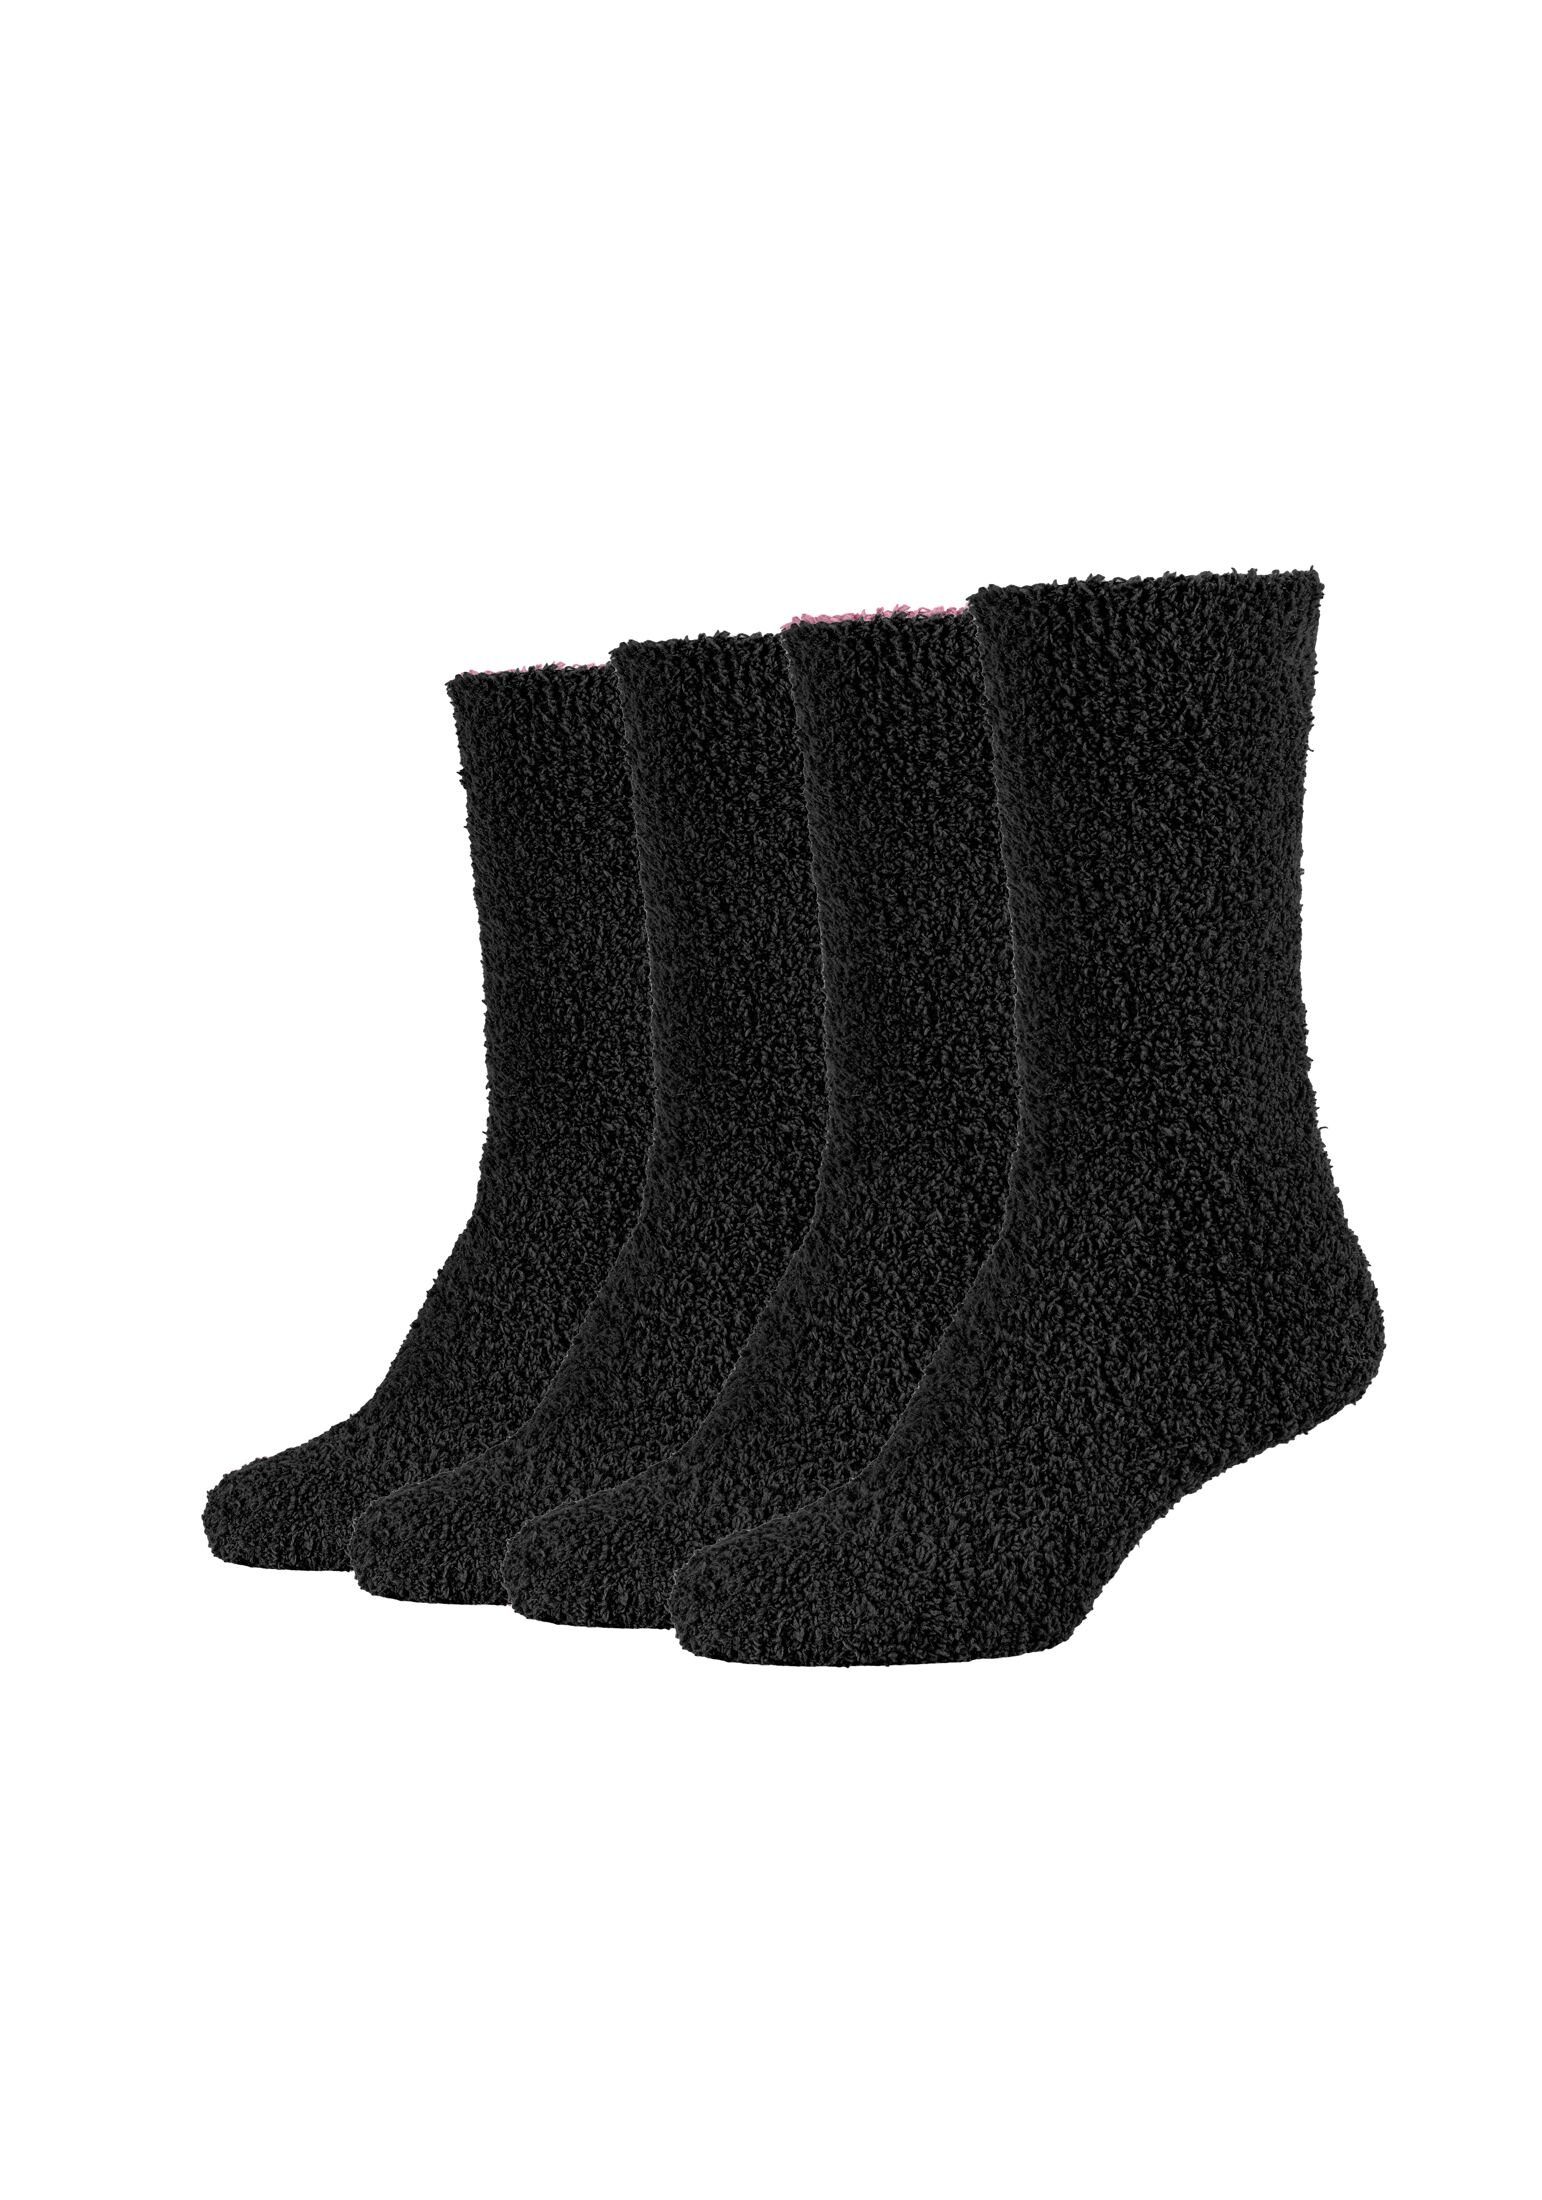 Camano Socken Socken Cosy Kuschelsocken Flauschig Warm Damen Lang black mix | Wintersocken